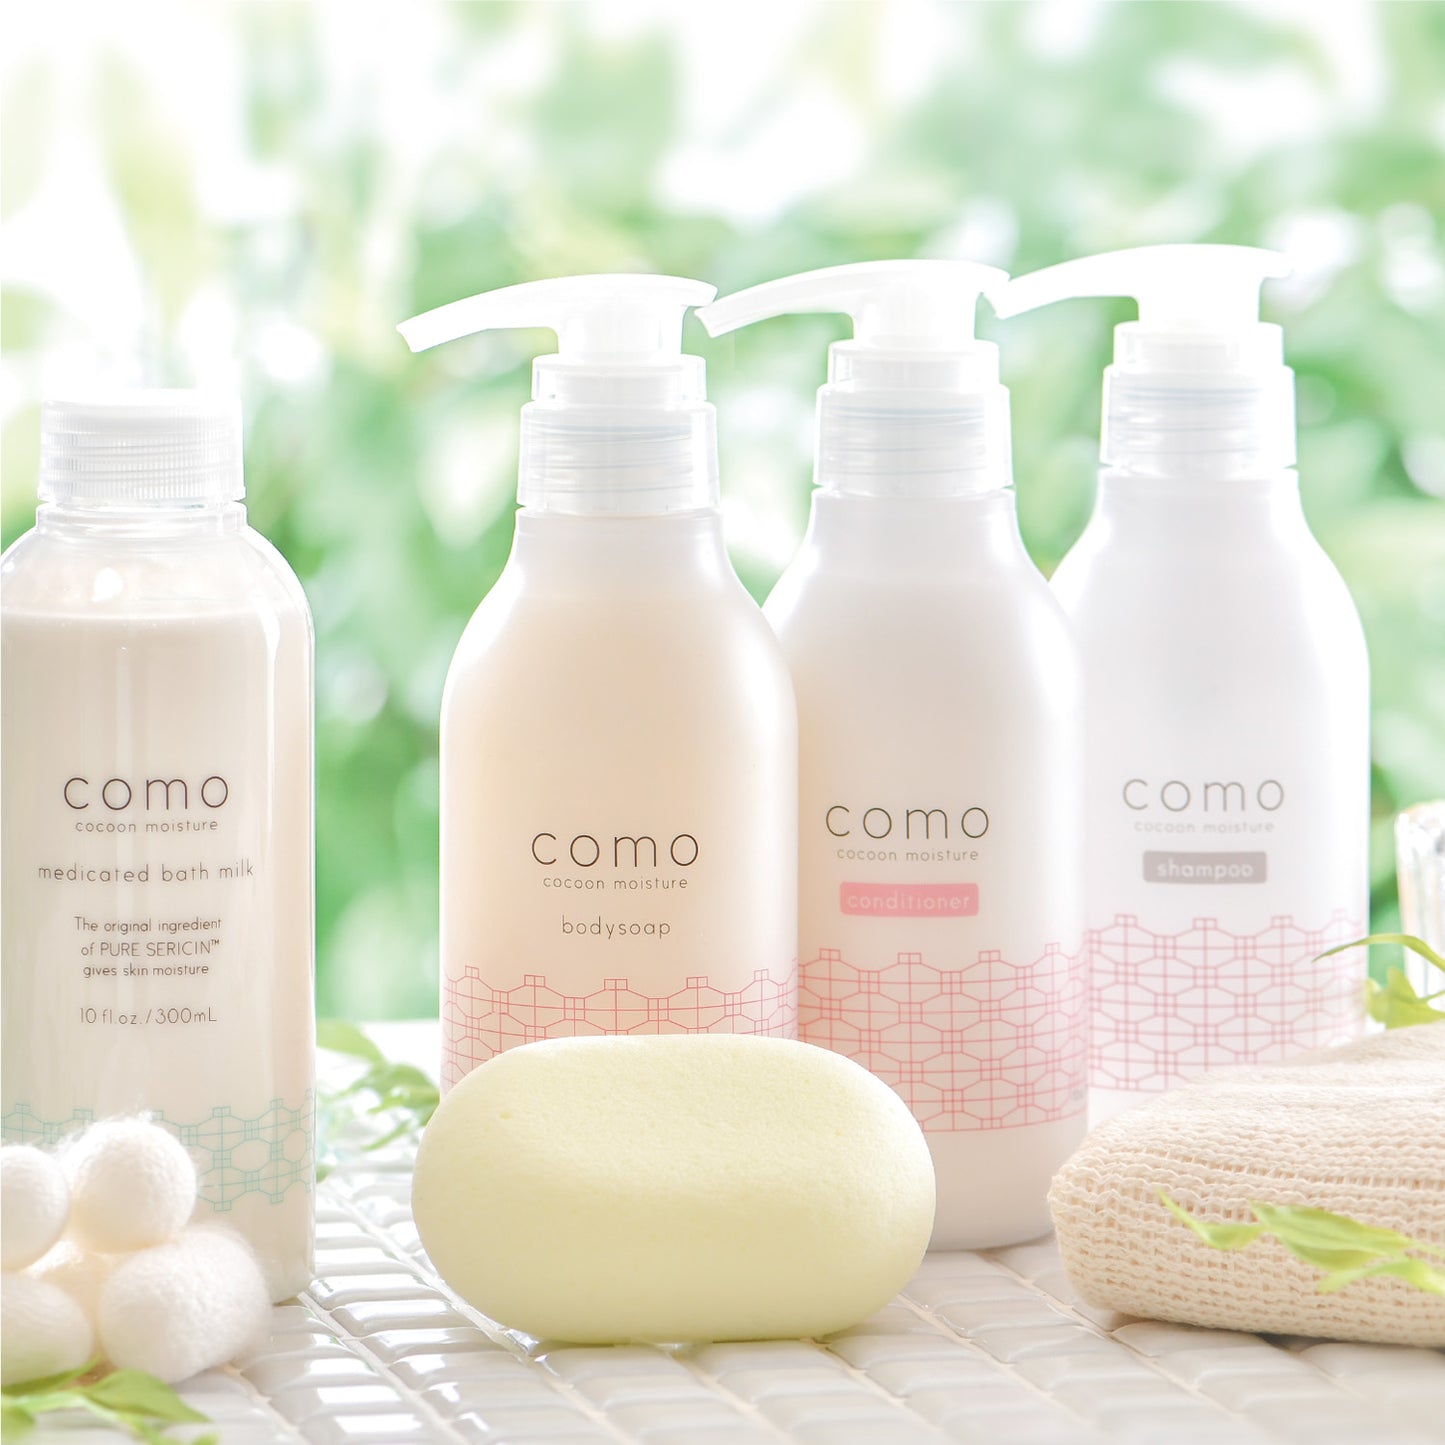 COMOACE Cocoon Moisture Shampoo